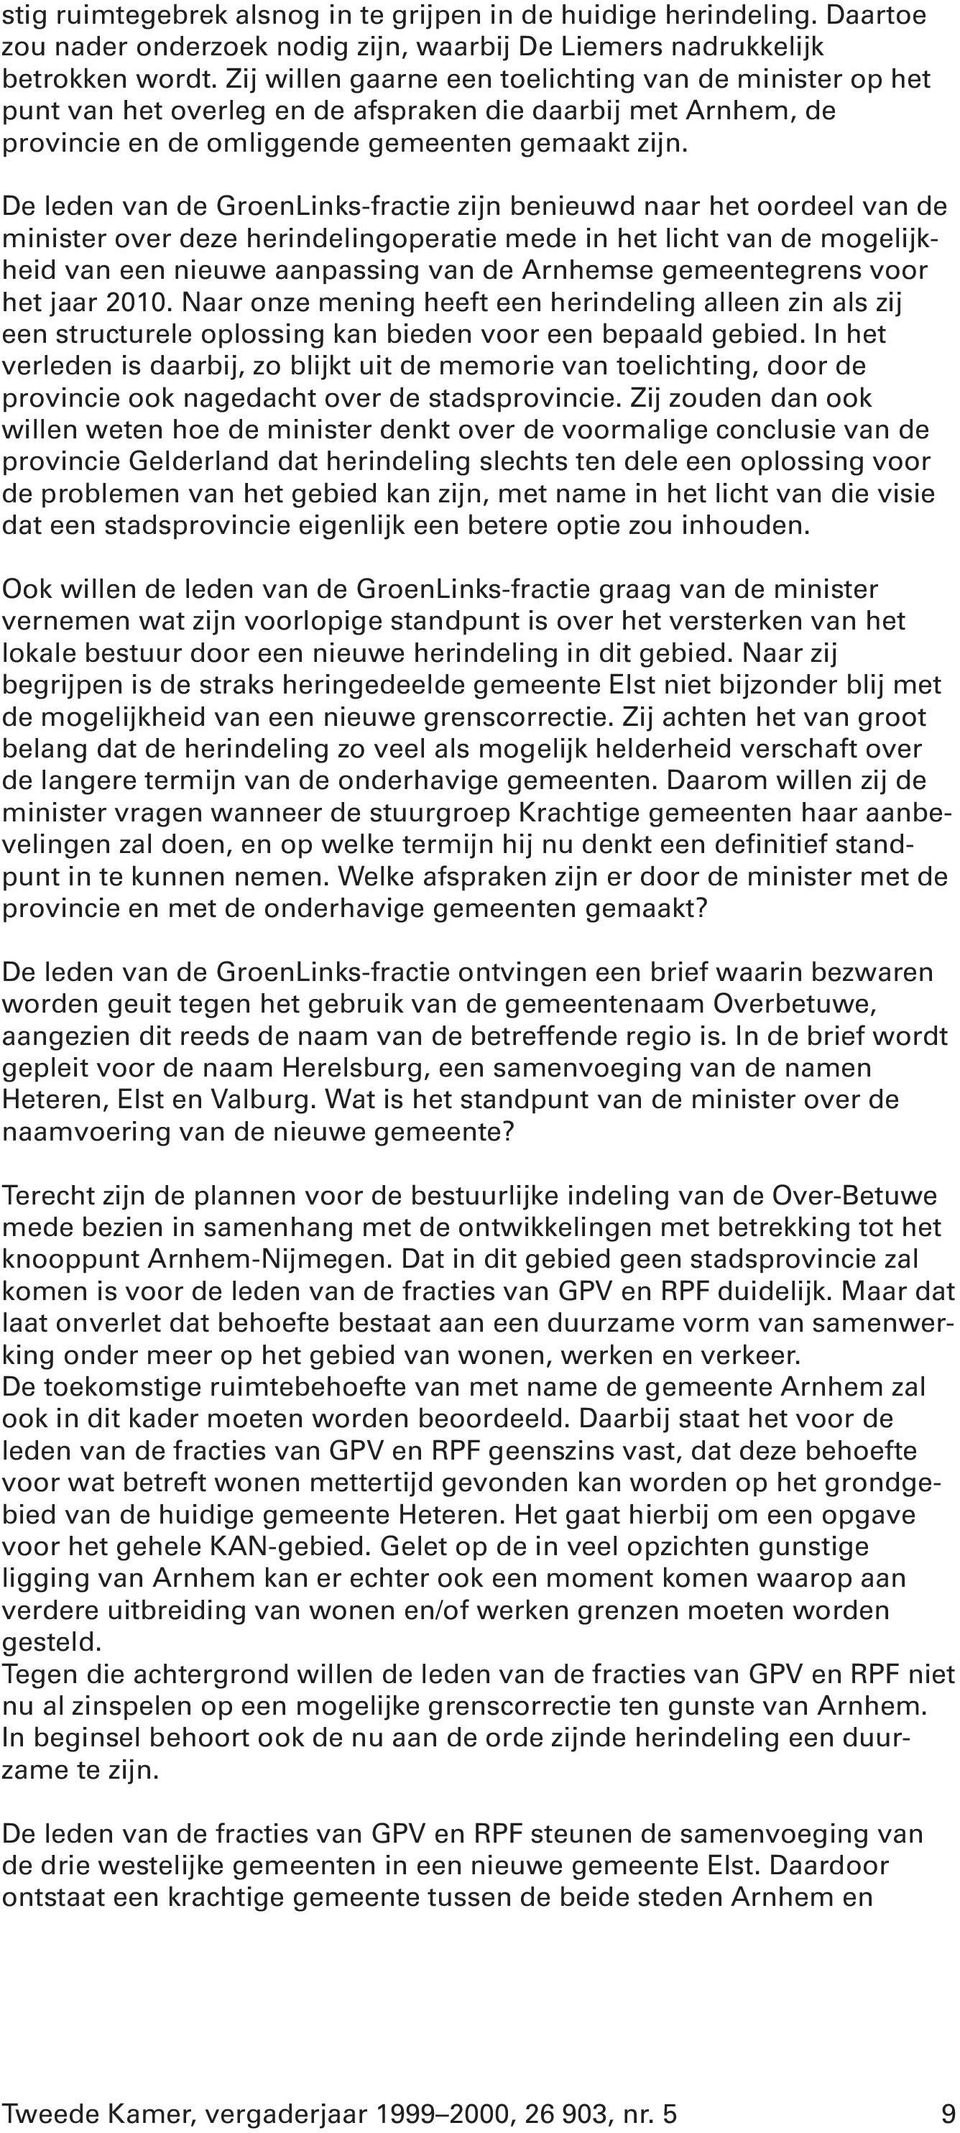 De leden van de GroenLinks-fractie zijn benieuwd naar het oordeel van de minister over deze herindelingoperatie mede in het licht van de mogelijkheid van een nieuwe aanpassing van de Arnhemse